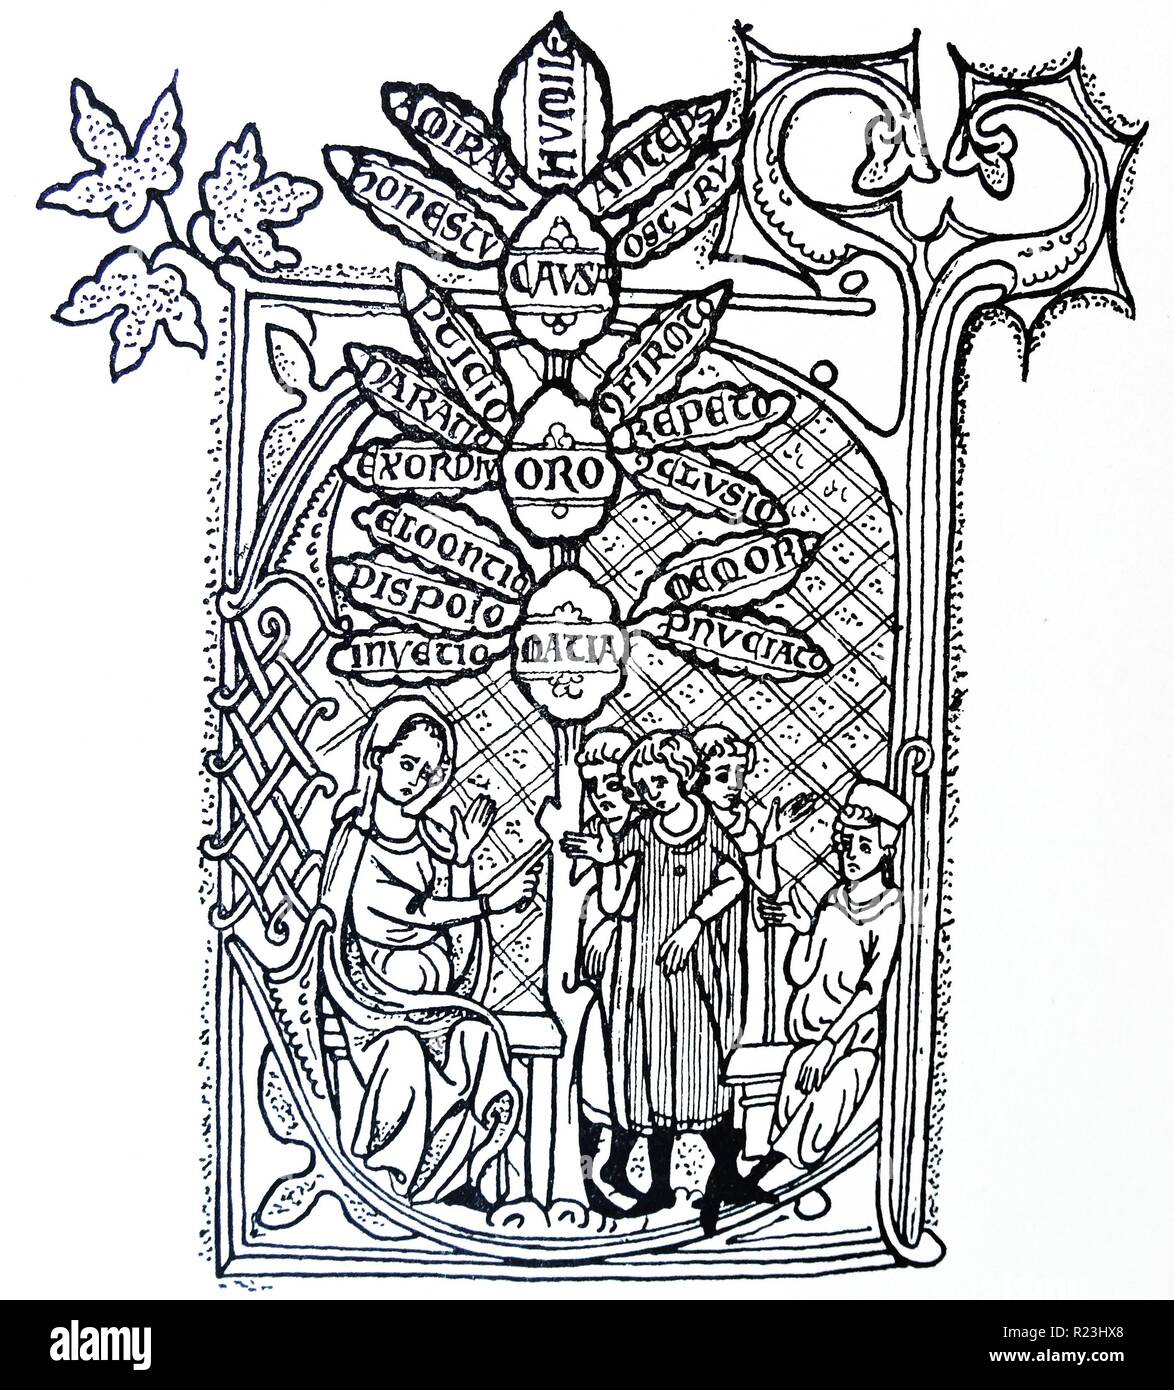 Abbildung: Darstellung der Rhetorik der Vermittlung. Der Stiel des Baumes teilt sich in die drei Teile der Rhetorik - 'Causa', 'oratio' und 'Material', während die Blätter die Unterteilung jedes Teil symbolisieren. Vom 12. Jahrhundert Stockfoto